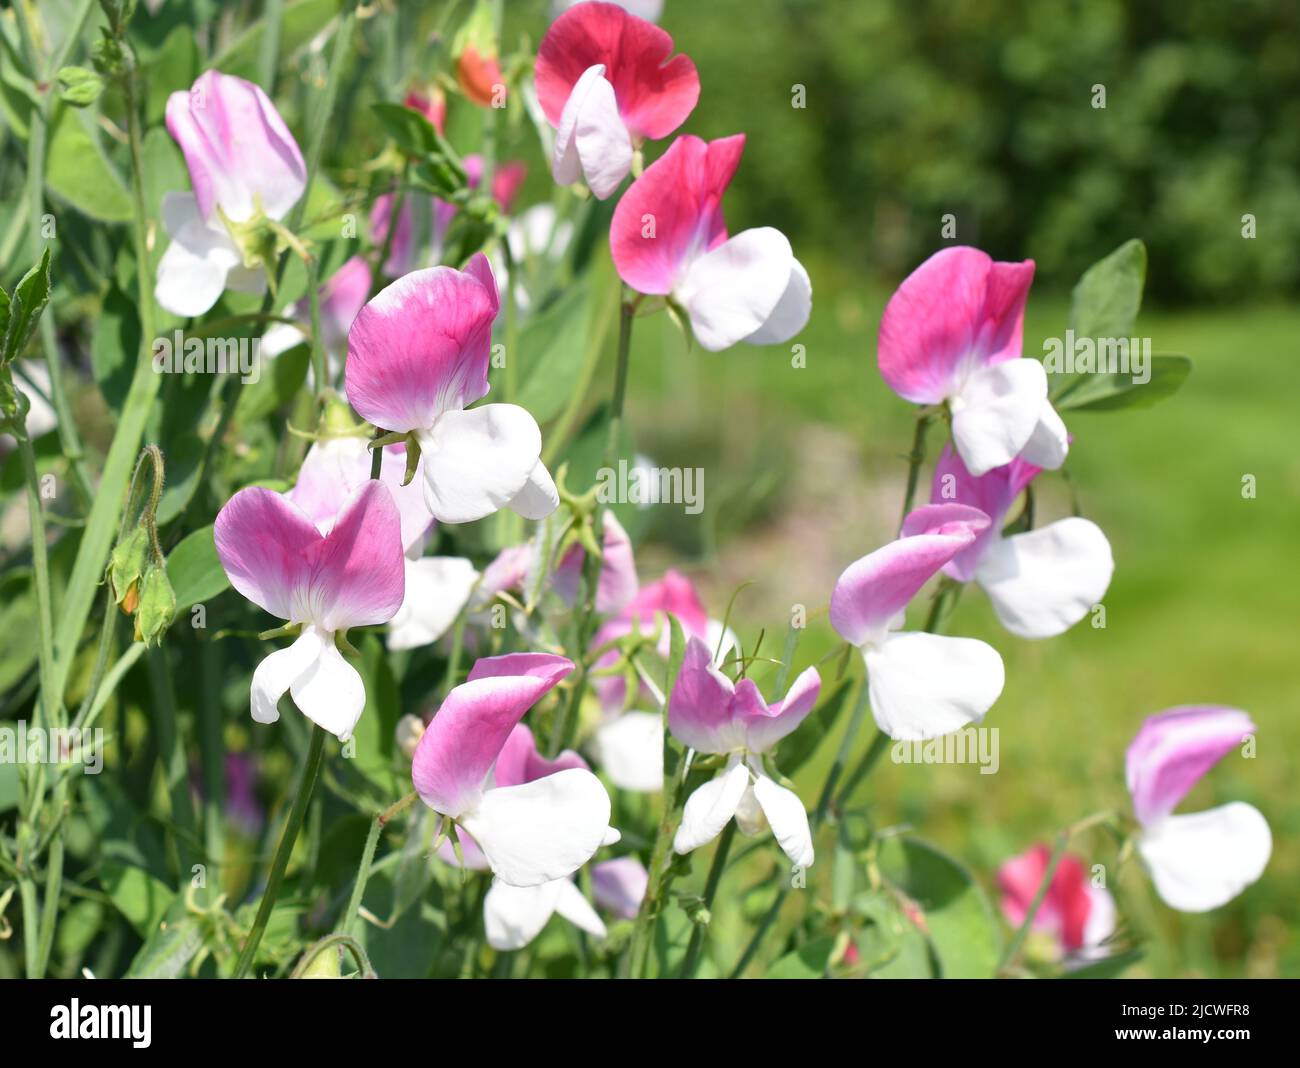 Guisante dulce Lathyrus odoratus flores en diferentes colores rosas Foto de stock